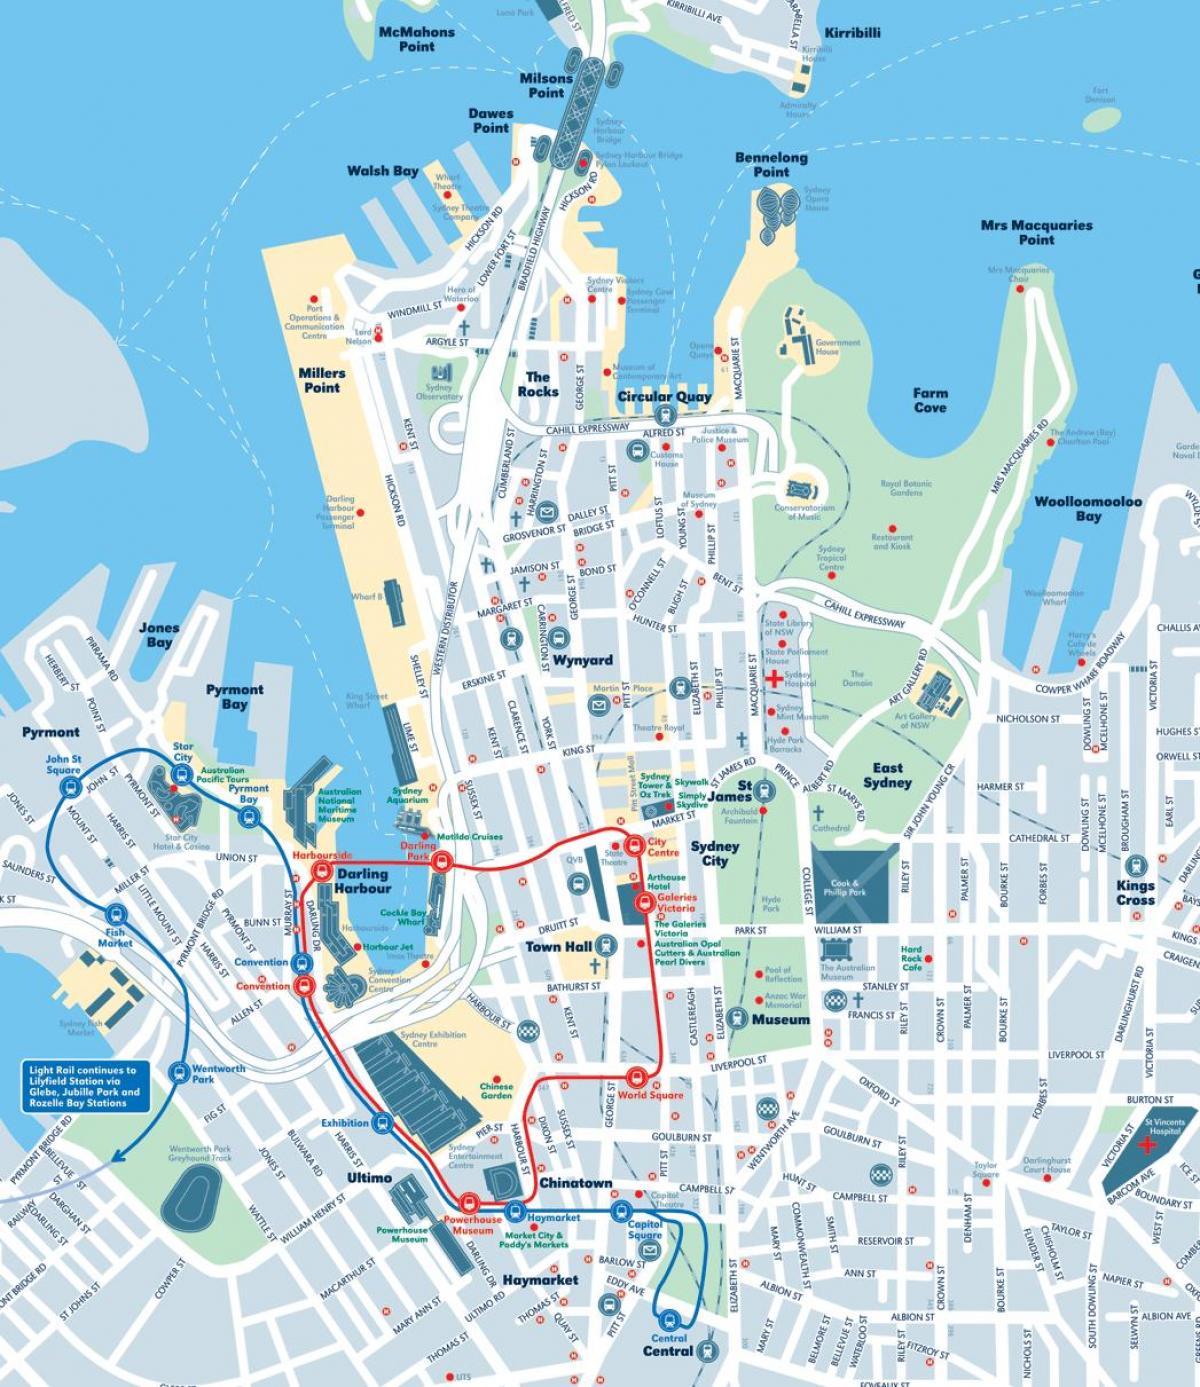 mappa della città di sydney